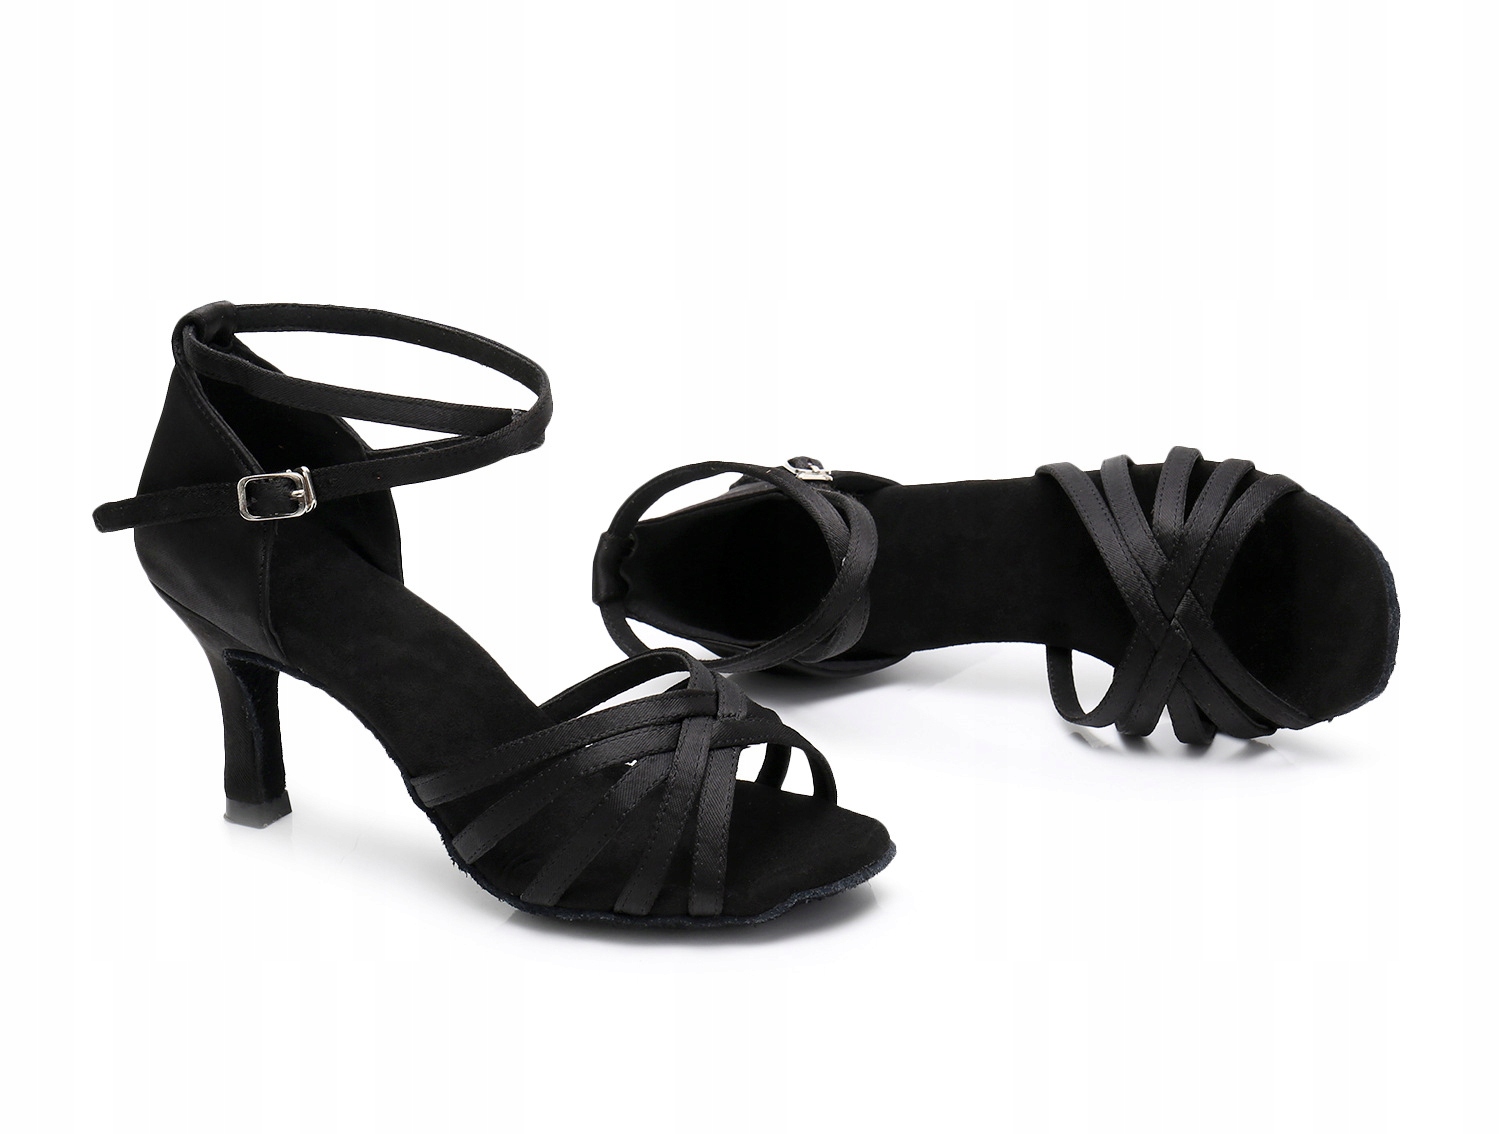 бальні танцювальні туфлі 7 см чорна модель FTY020-7cm